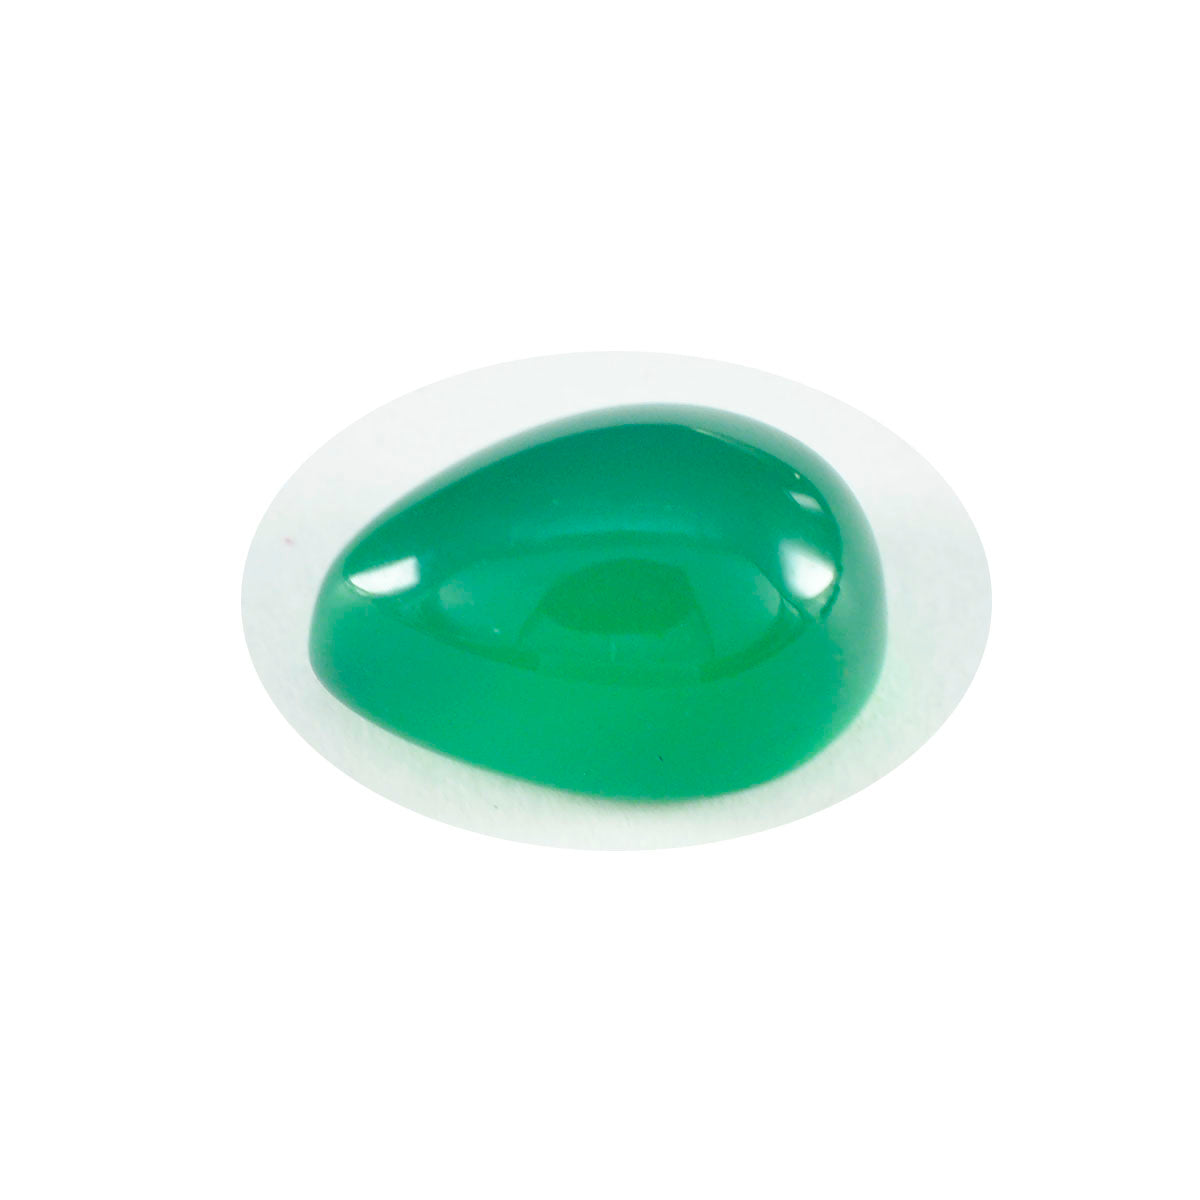 Riyogems 1 Stück grüner Onyx-Cabochon, 8 x 12 mm, Birnenform, hübscher, hochwertiger, loser Edelstein